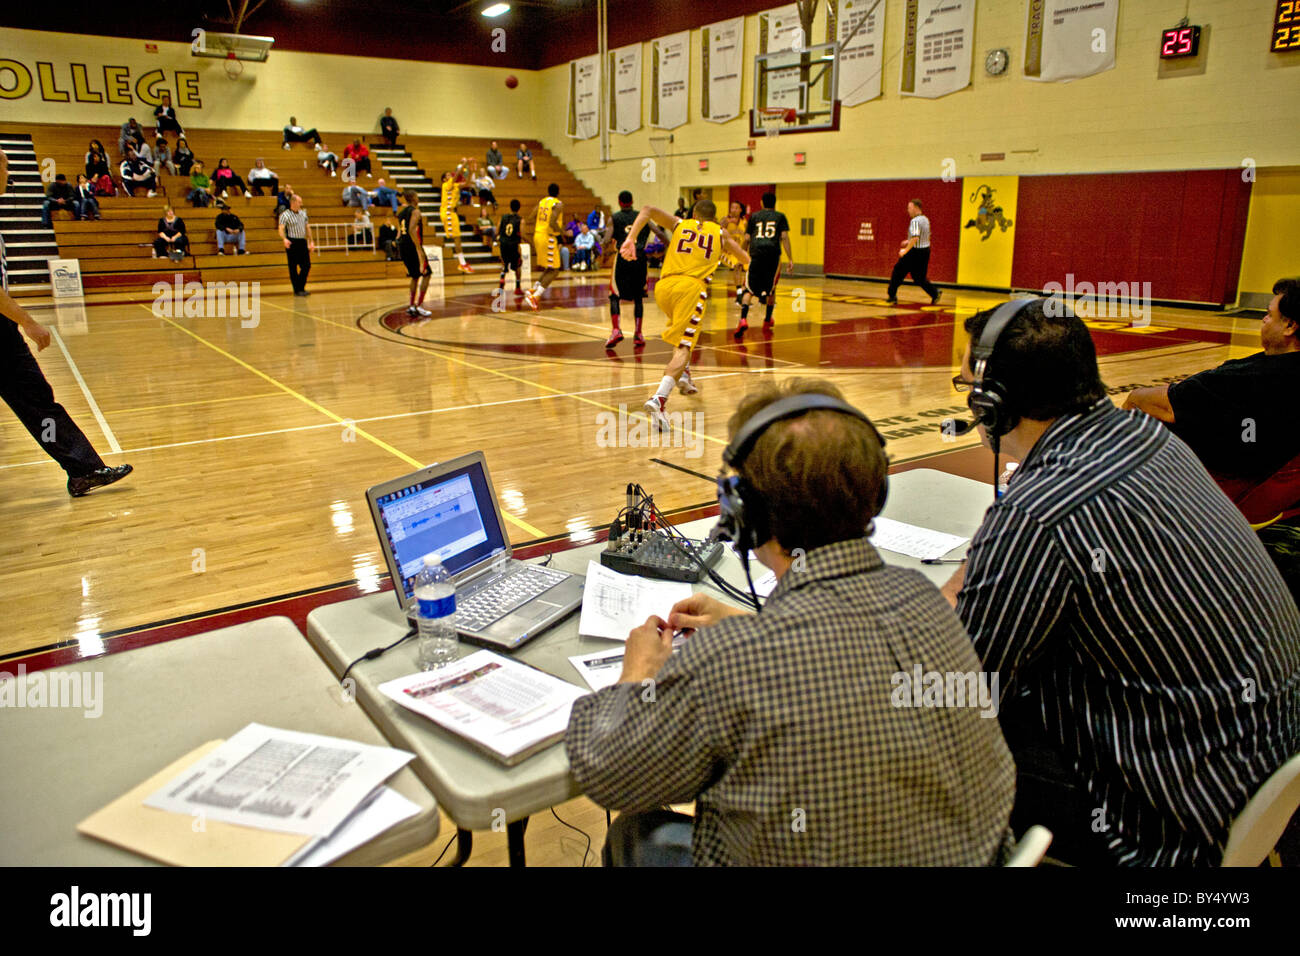 Un campus annunciatore radiofonico (destra) fornisce un commento su una partita di basket nel collegio palestra . Foto Stock